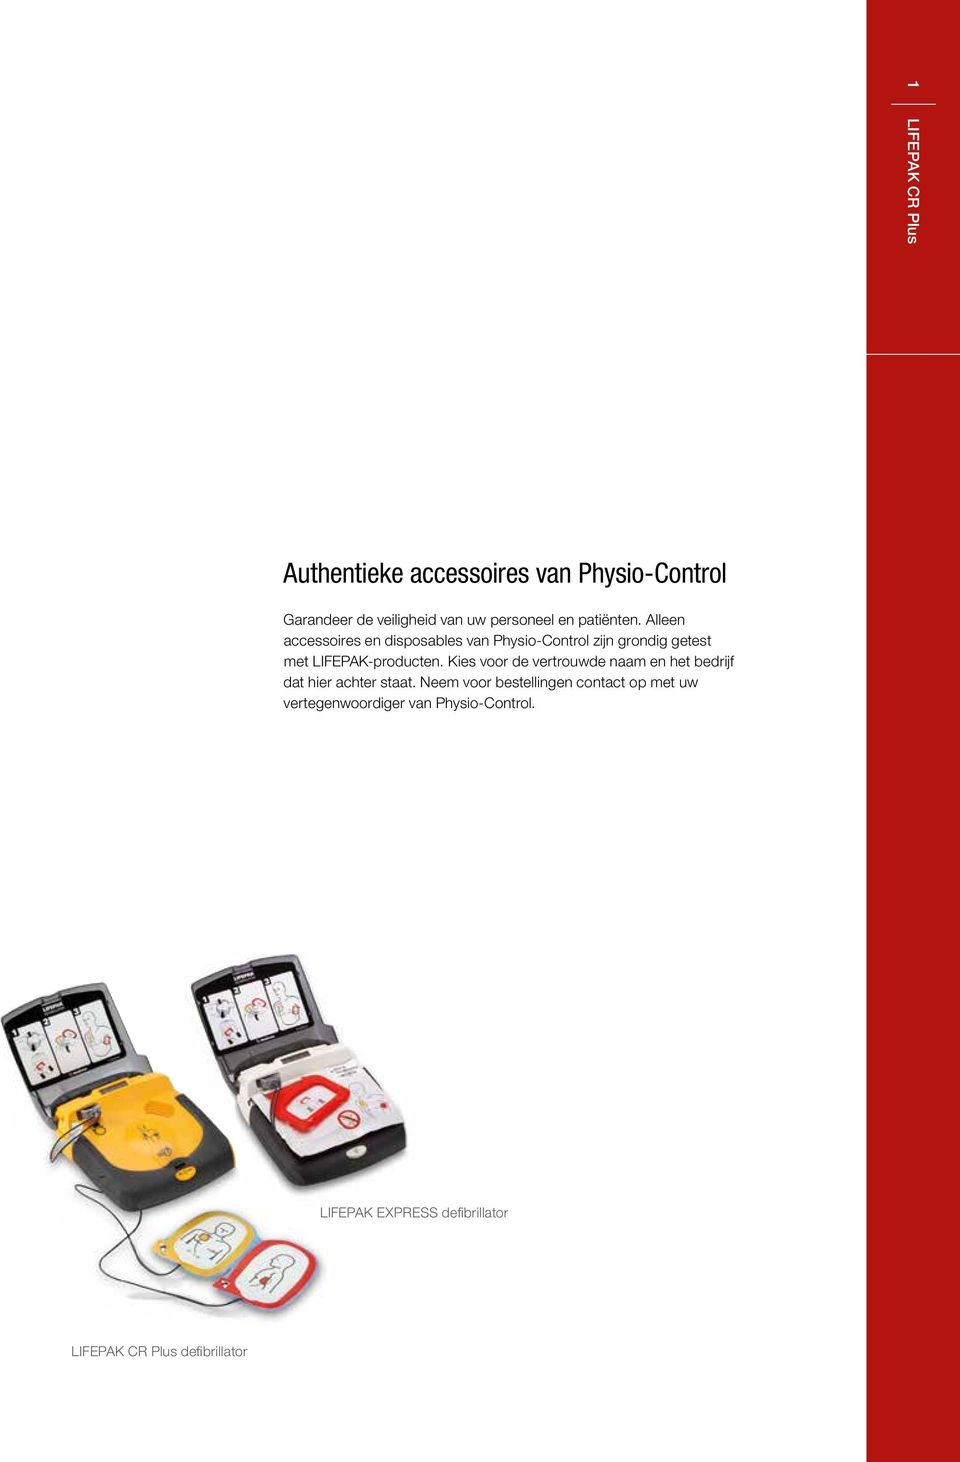 Alleen accessoires en disposables van Physio-Control zijn grondig getest met LIFEPAK-producten.